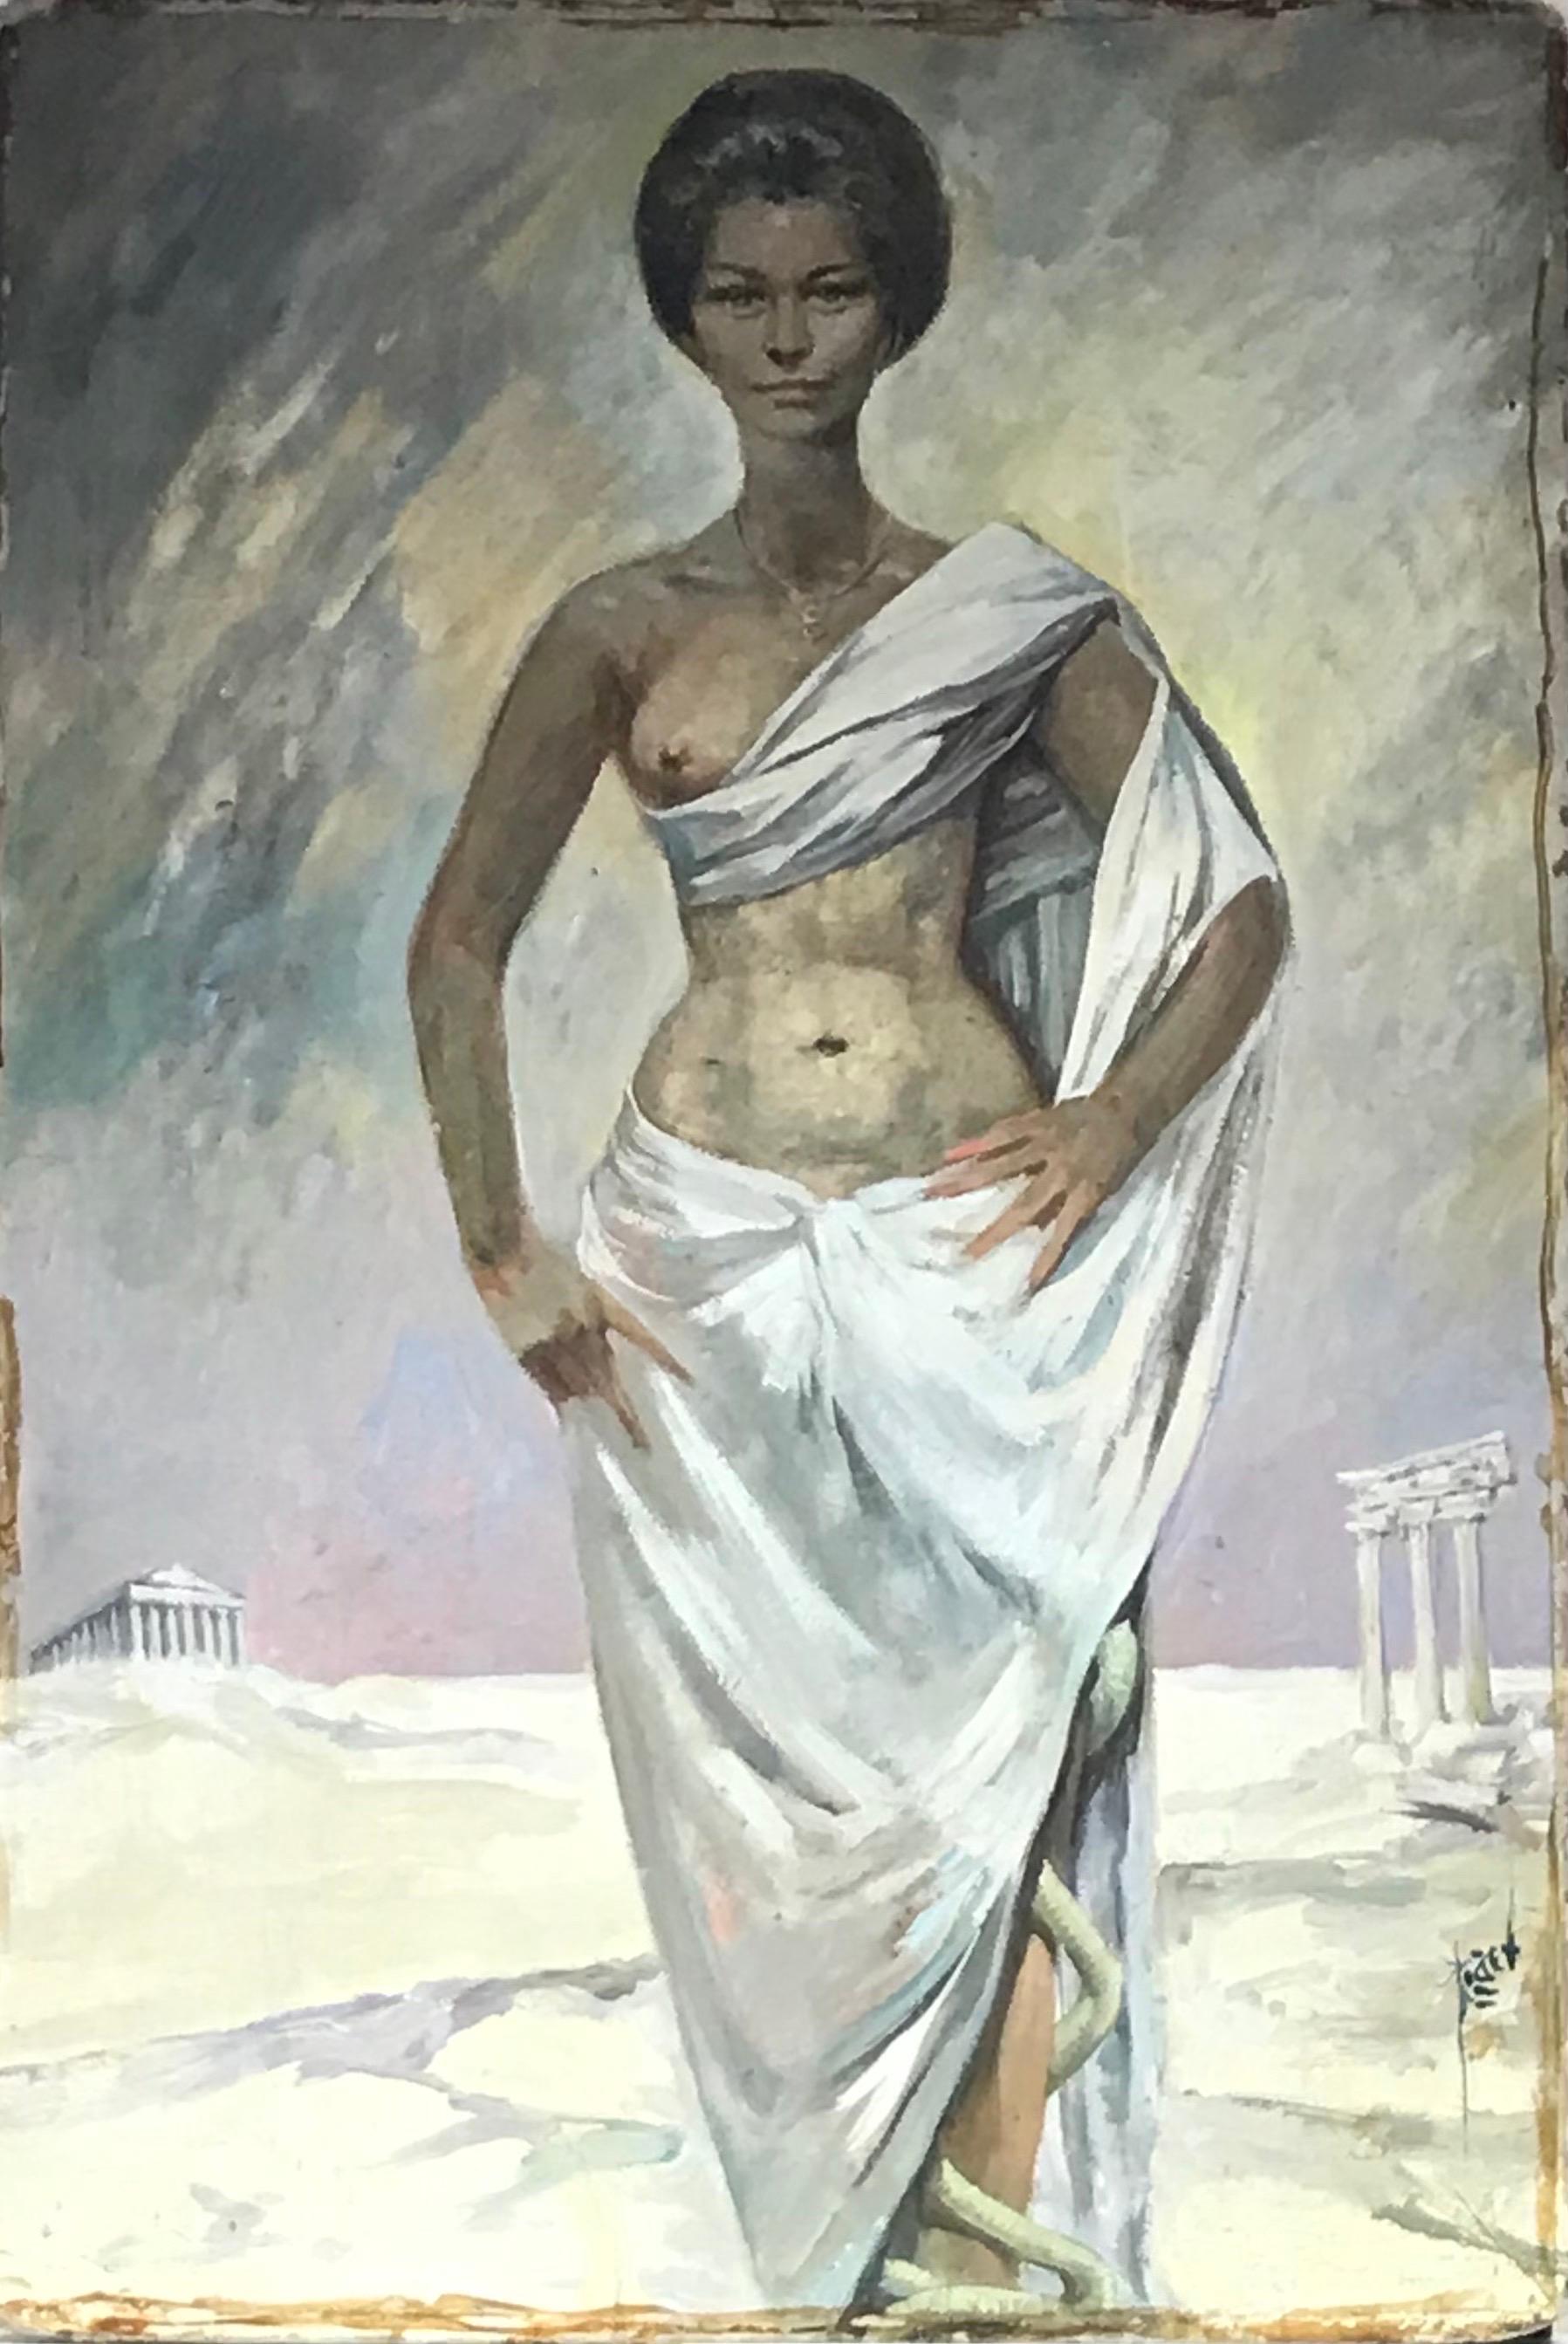 Großes französisches Ölporträt aus den 1960er Jahren mit römischem/griechischem Halbakt, Dame in klassischen Ruinen – Painting von Pierre PIGET (1907-1990)